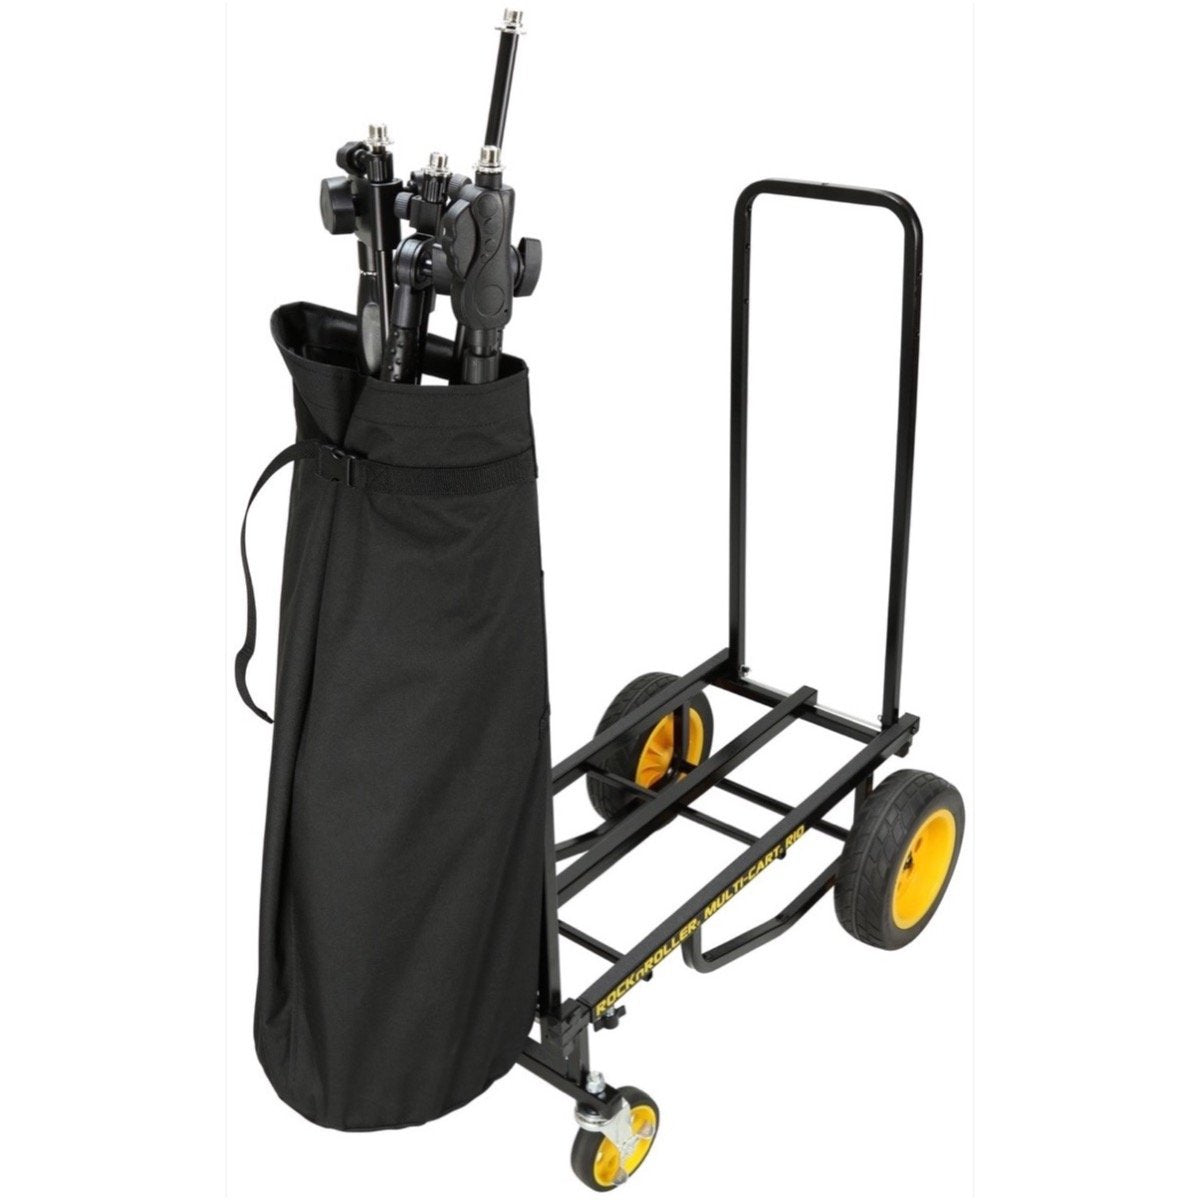 RocknRoller Handle Bag with Rigid Bottom, RSA-HBR8, Fits R8, R10, R12 Carts